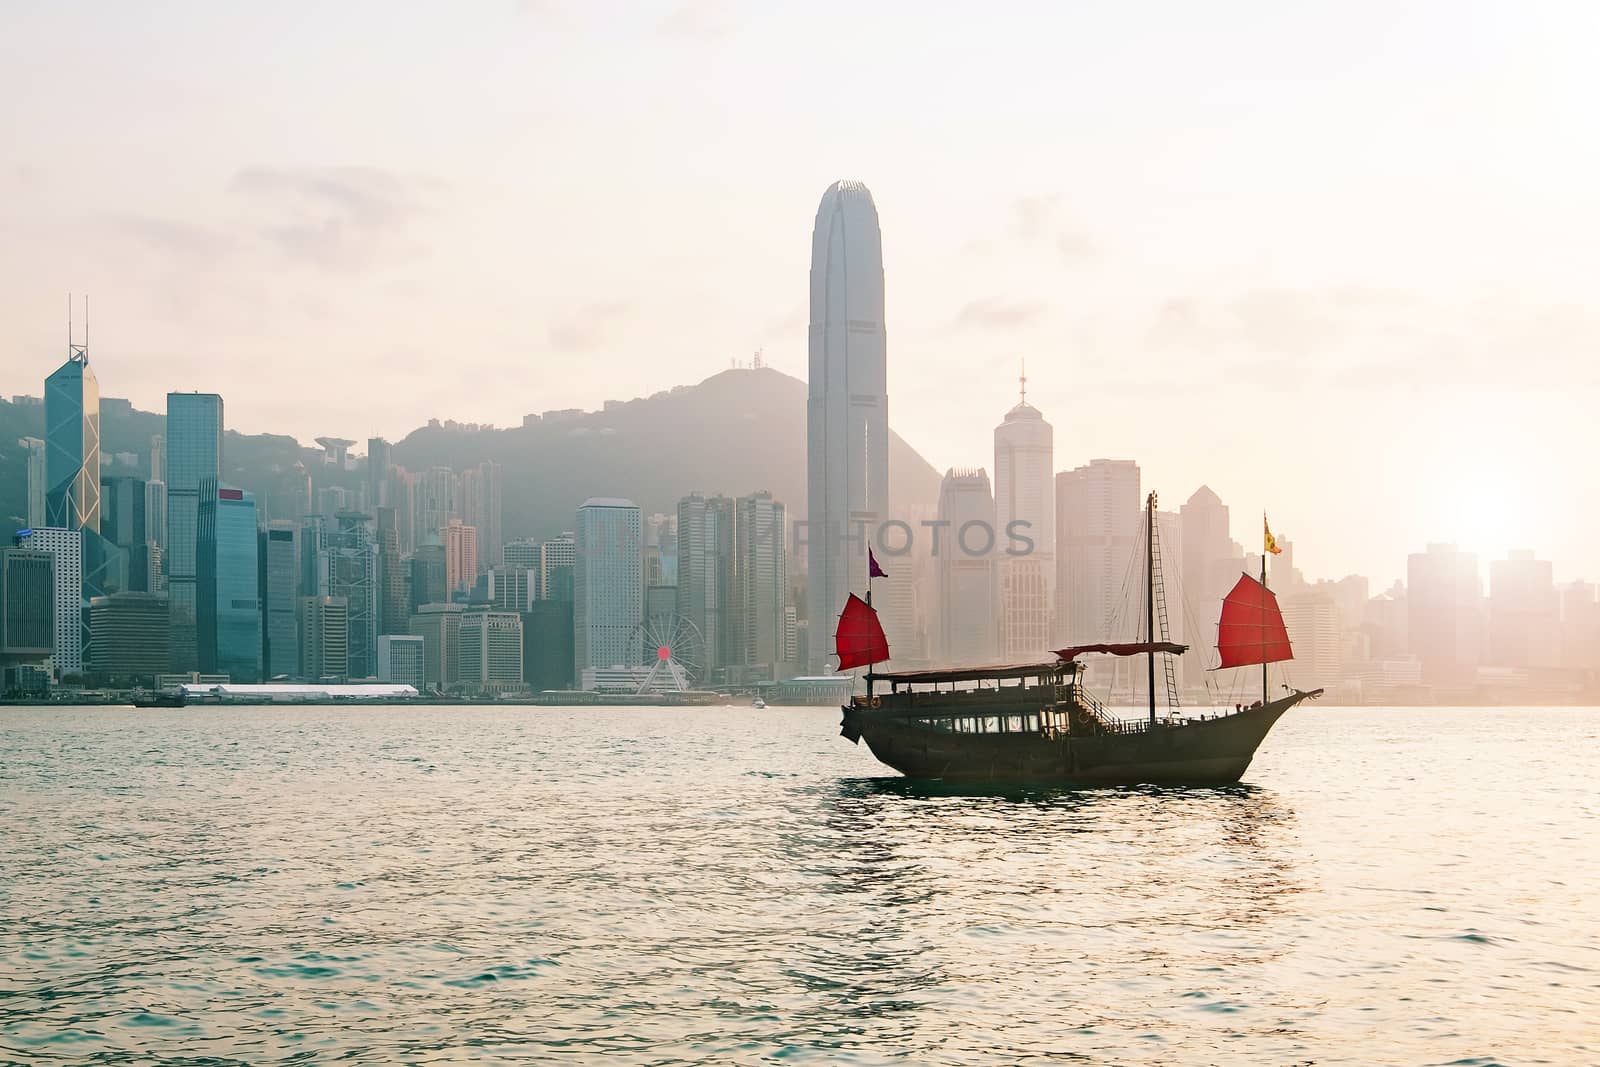 Hong Kong skyline with a traditional boat seen from Kowloon, Hong Kong, China.